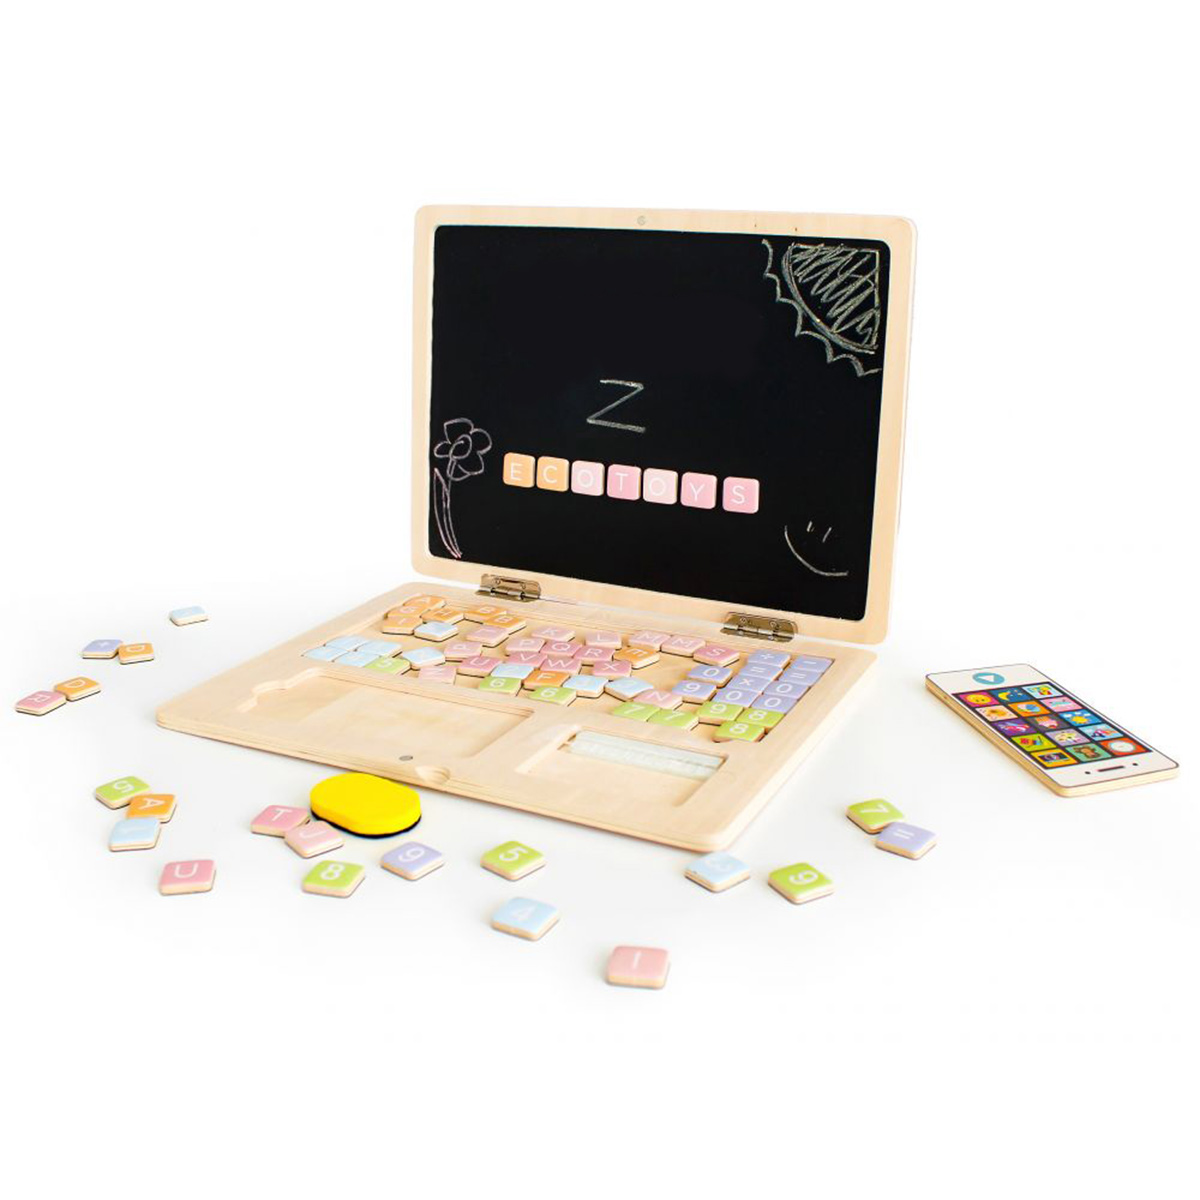 Lesen izobraževalni prenosni računalnik s tablo. Komplet vsebuje 78 magnetnih elementov, iz katerih lahko otrok na tabli ustvarja stavke, preproste enačbe itd.